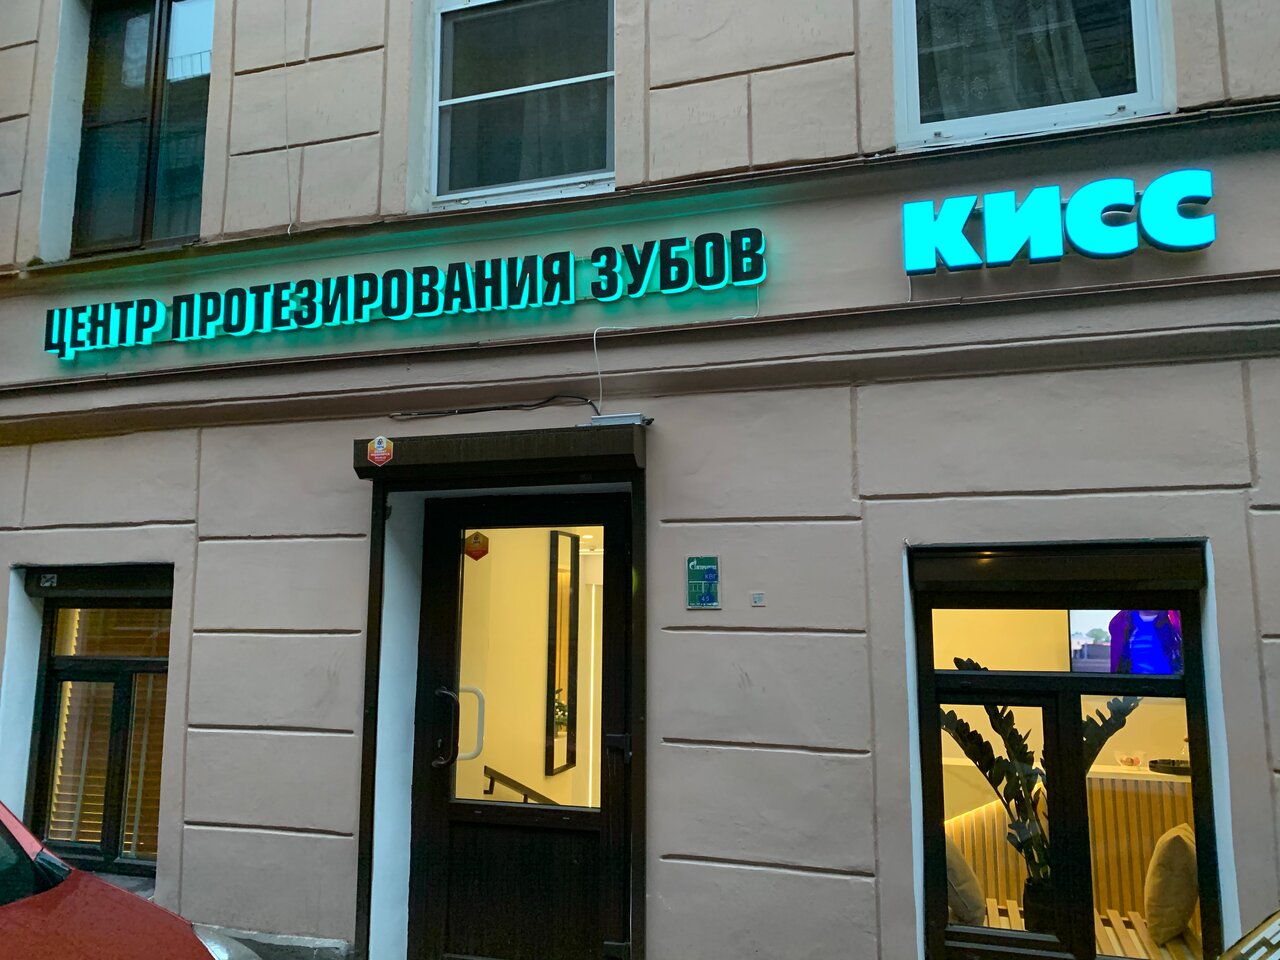 Стоматологическая клиника КИСС, Казань, набережная реки Фонтанки, 58